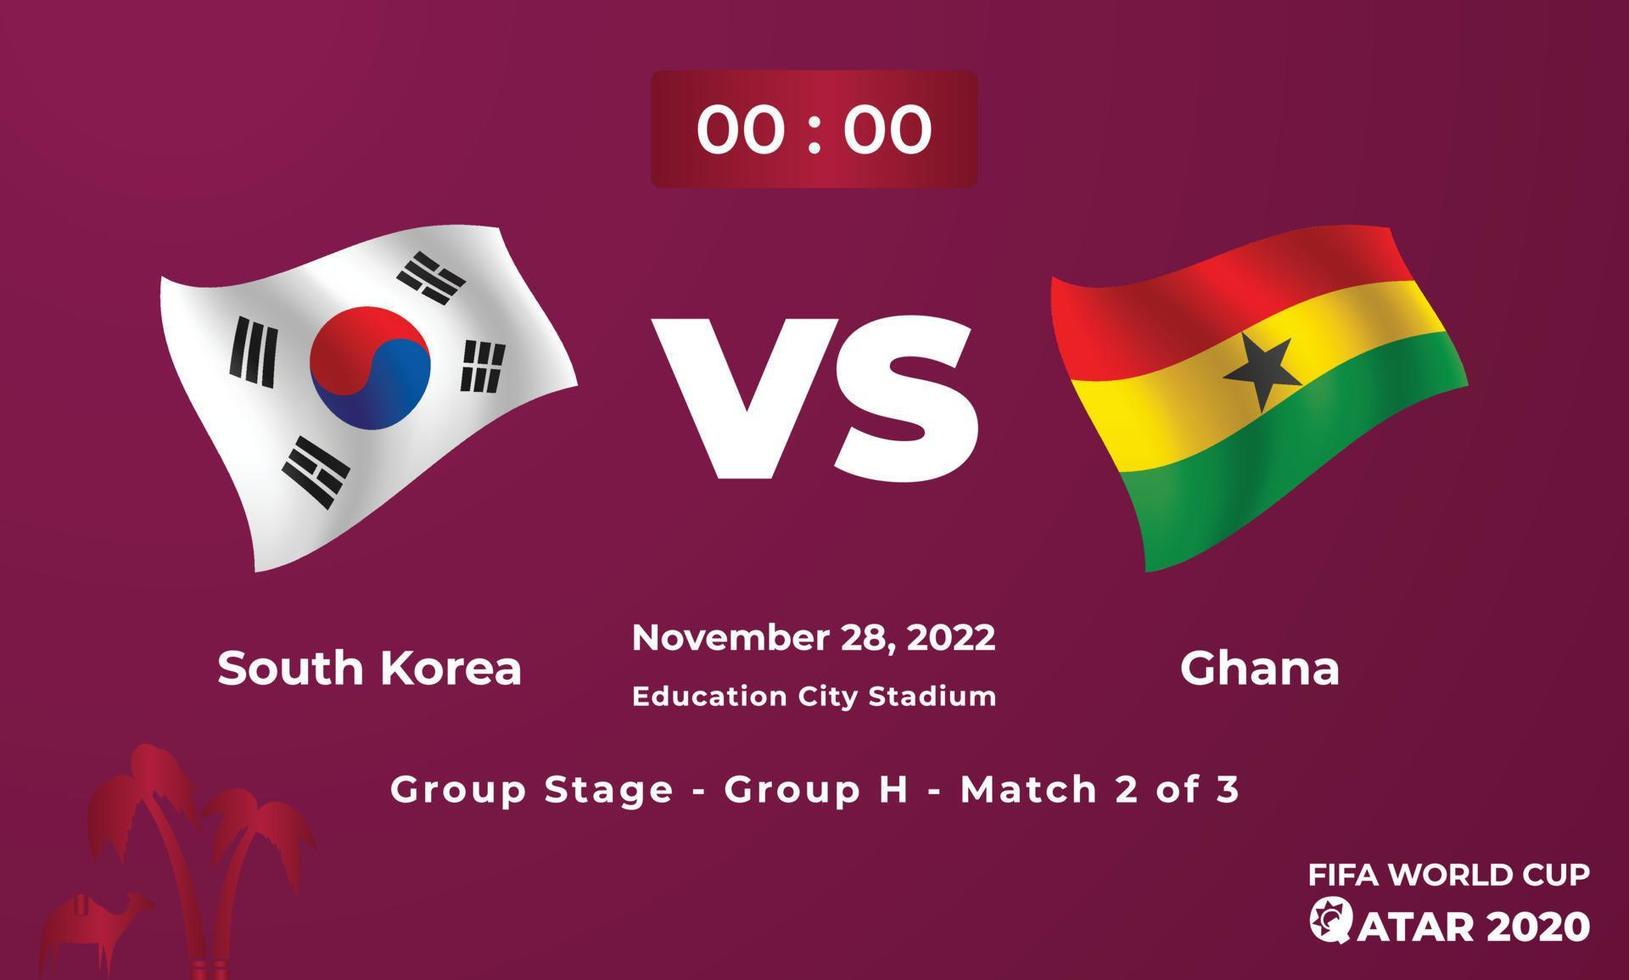 plantilla de partido de fútbol corea del sur vs ghana, copa mundial de la fifa en qatar 2022 vector